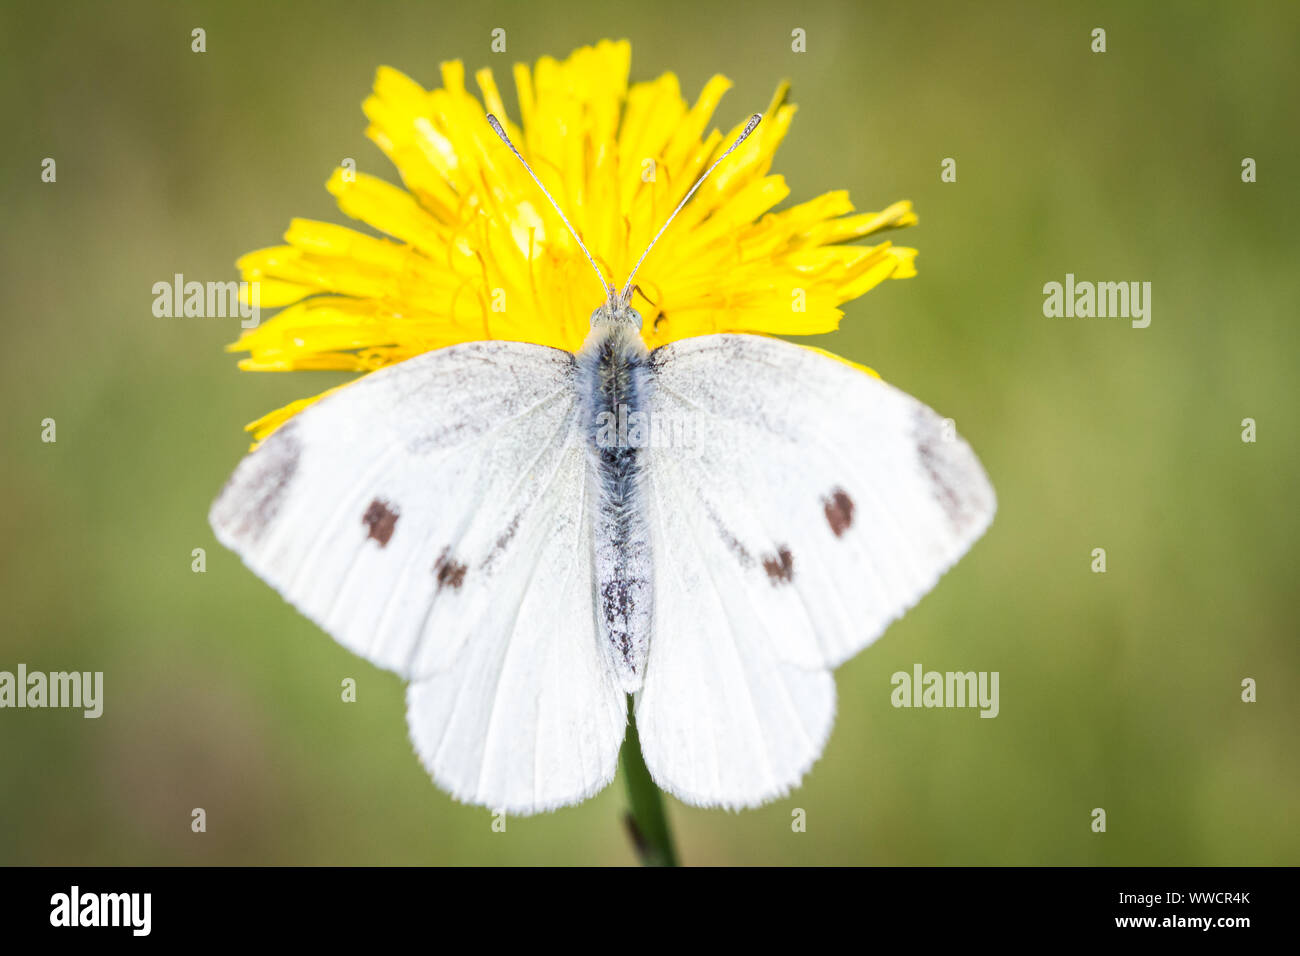 Lépidoptères Pieris brassicae (grand papillon blanc du chou / Schmetterling Großer Kohlweißling) se nourrissant sur une fleur jaune Banque D'Images